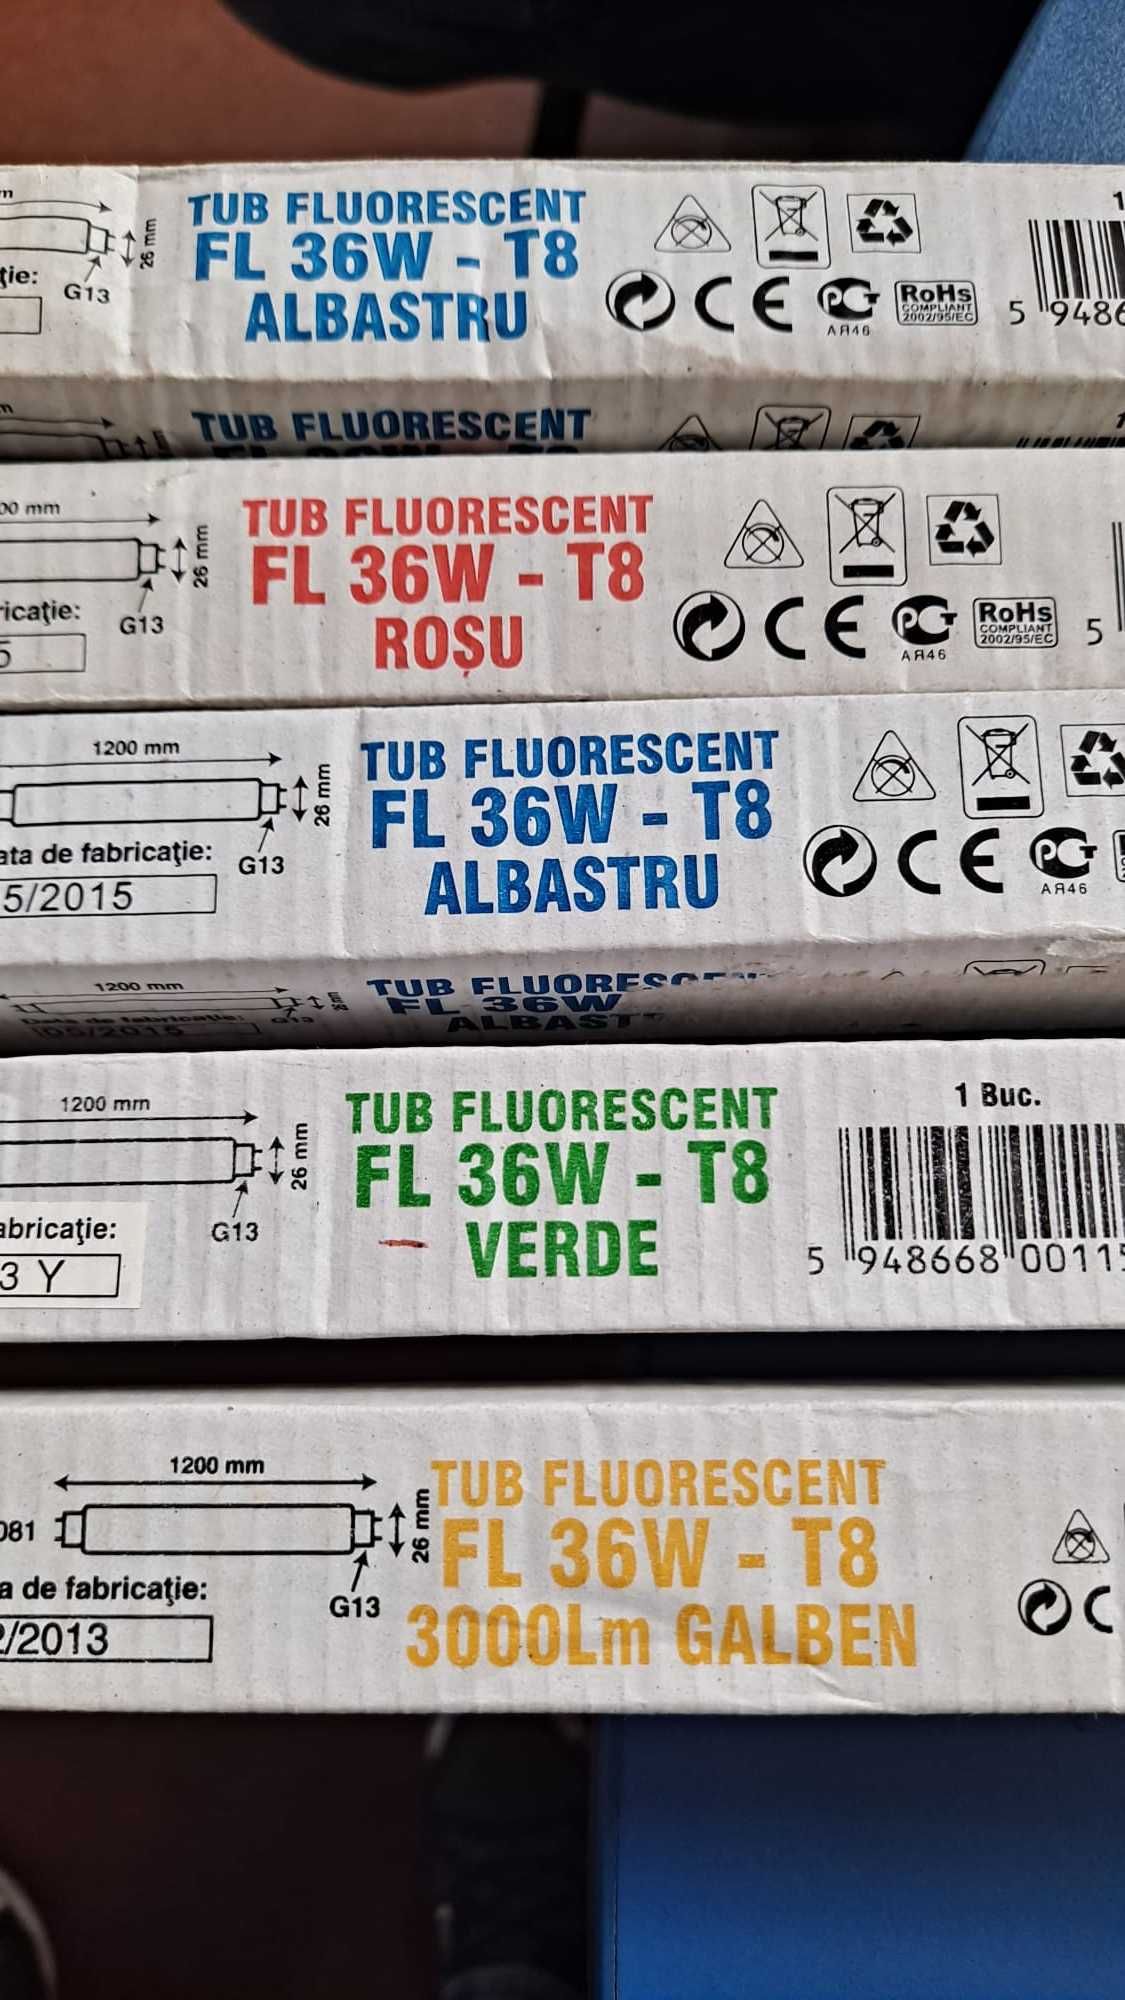 Tub fluorescent FL 36W - T8, Albastru, Rosu, Verde, Galben